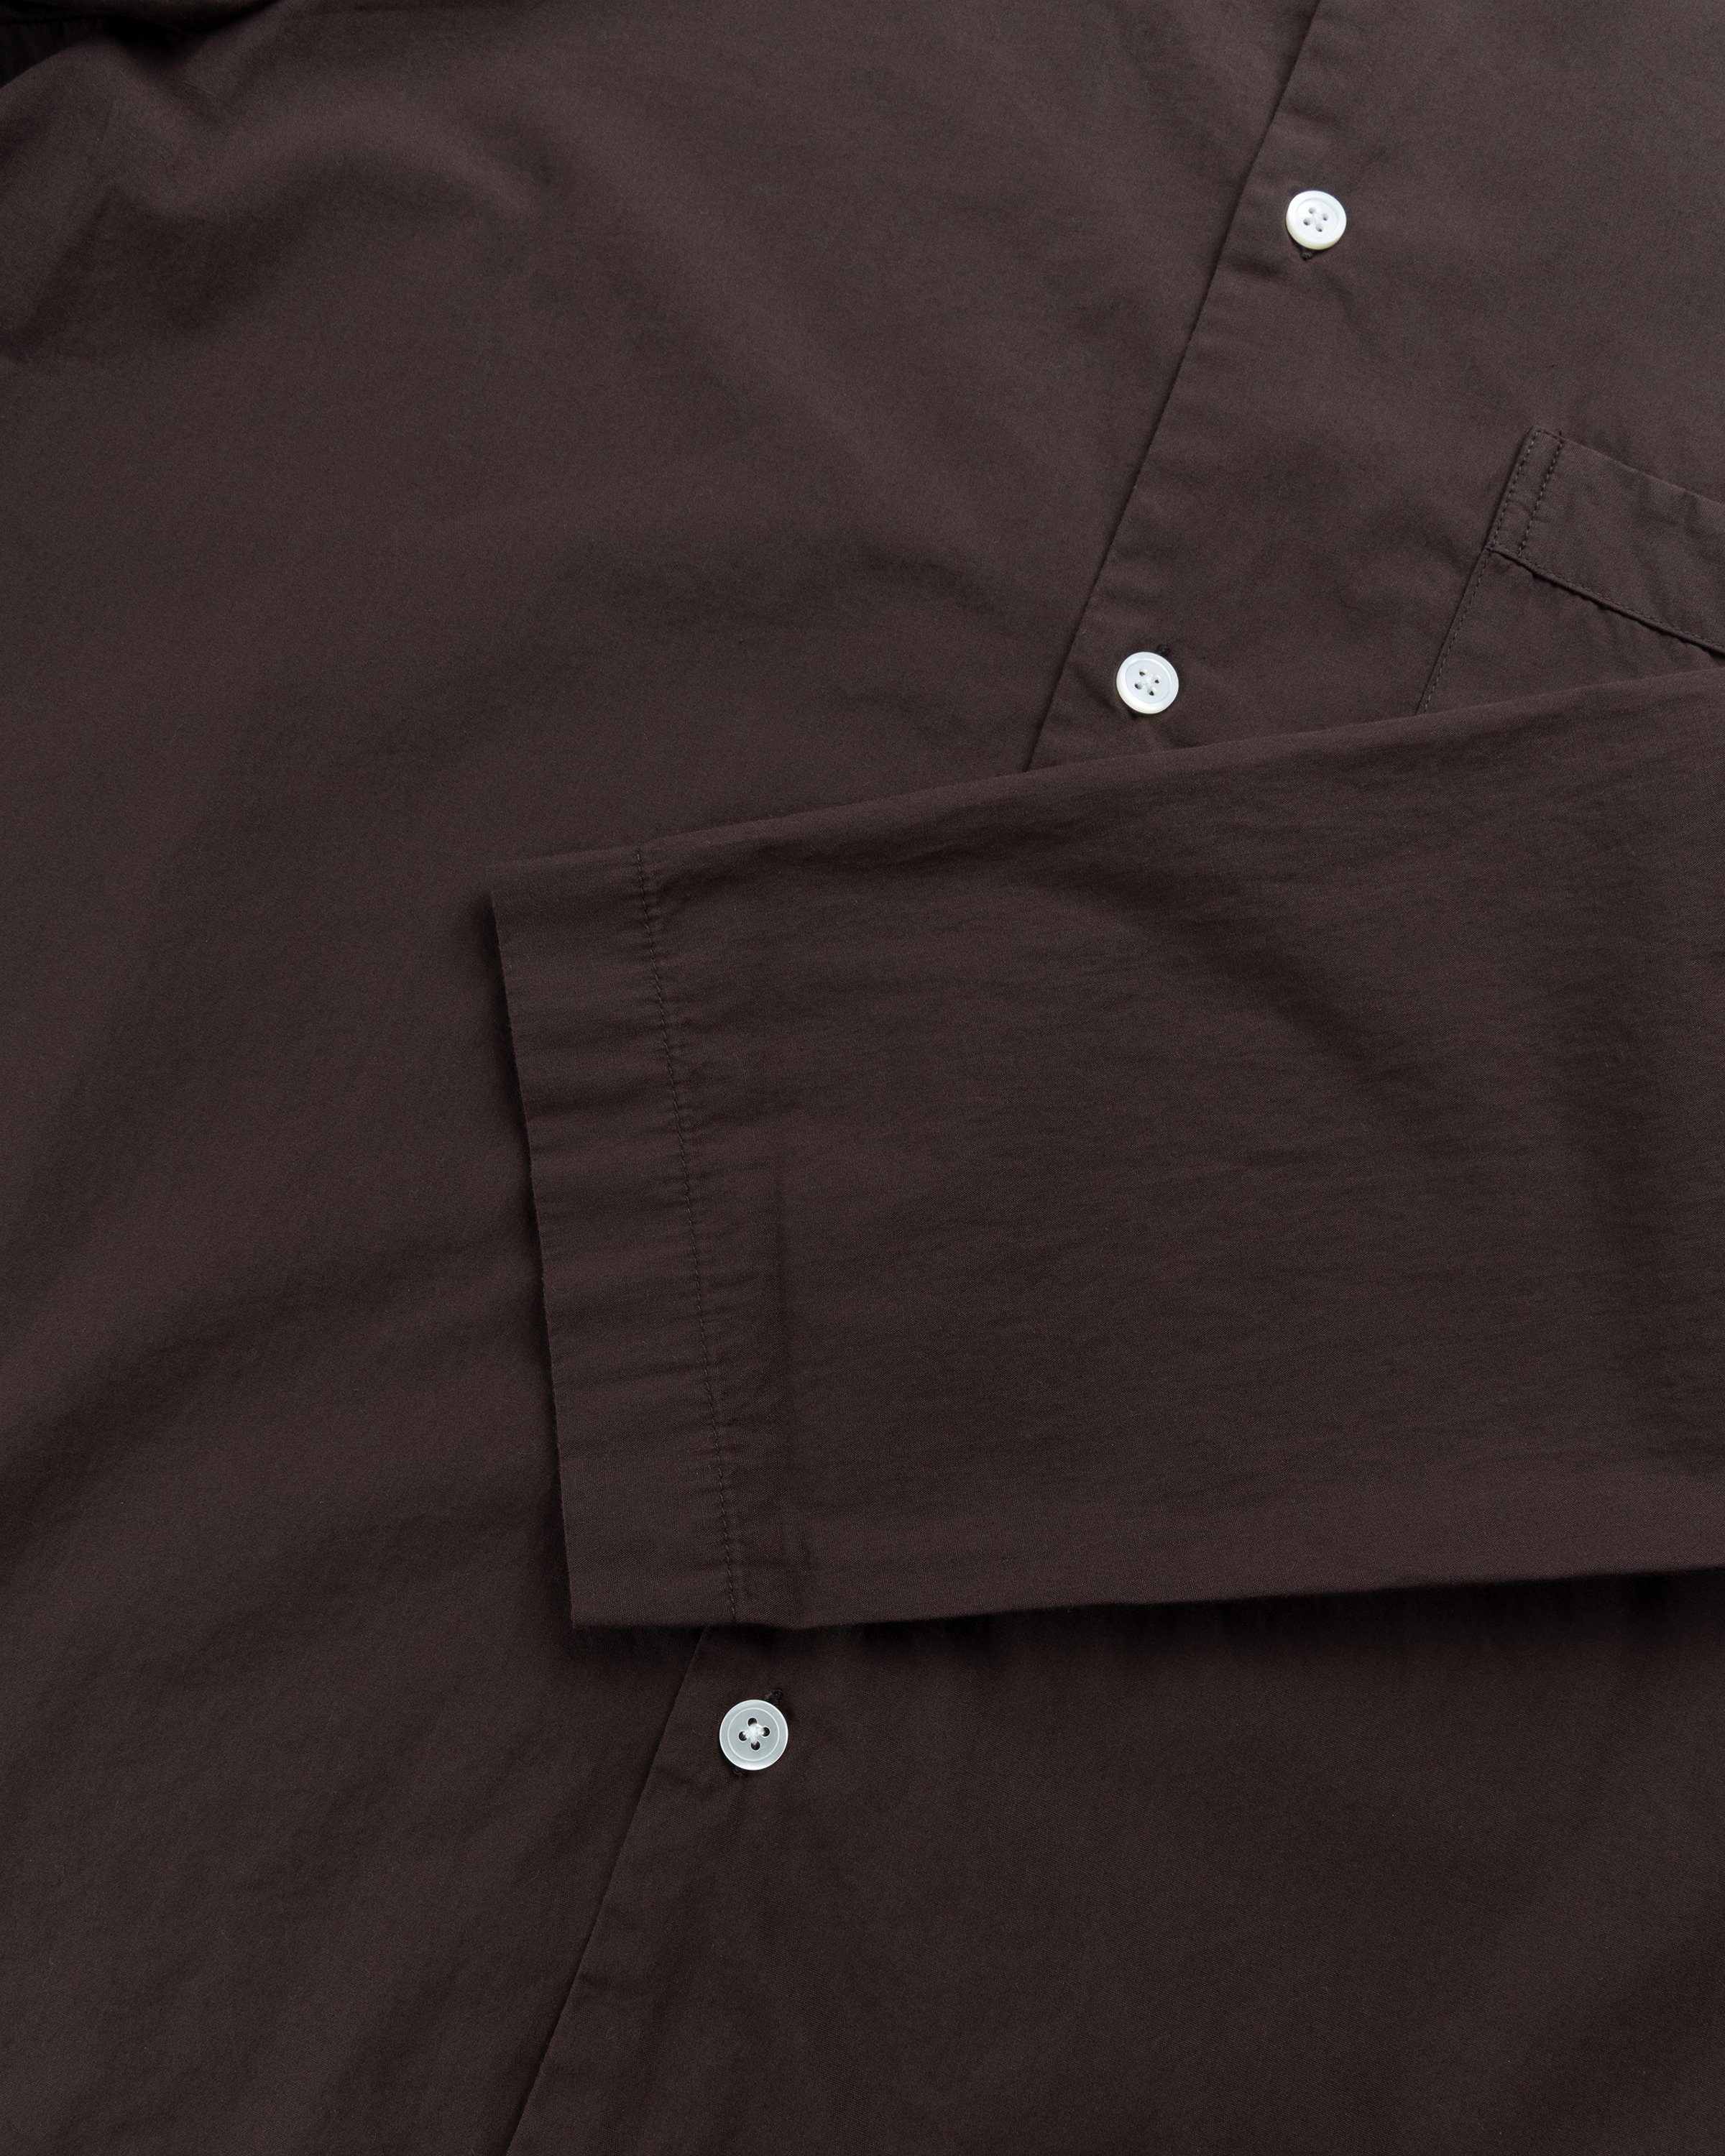 Tekla - Cotton Poplin Pyjamas Shirt Coffee - Clothing - Brown - Image 5